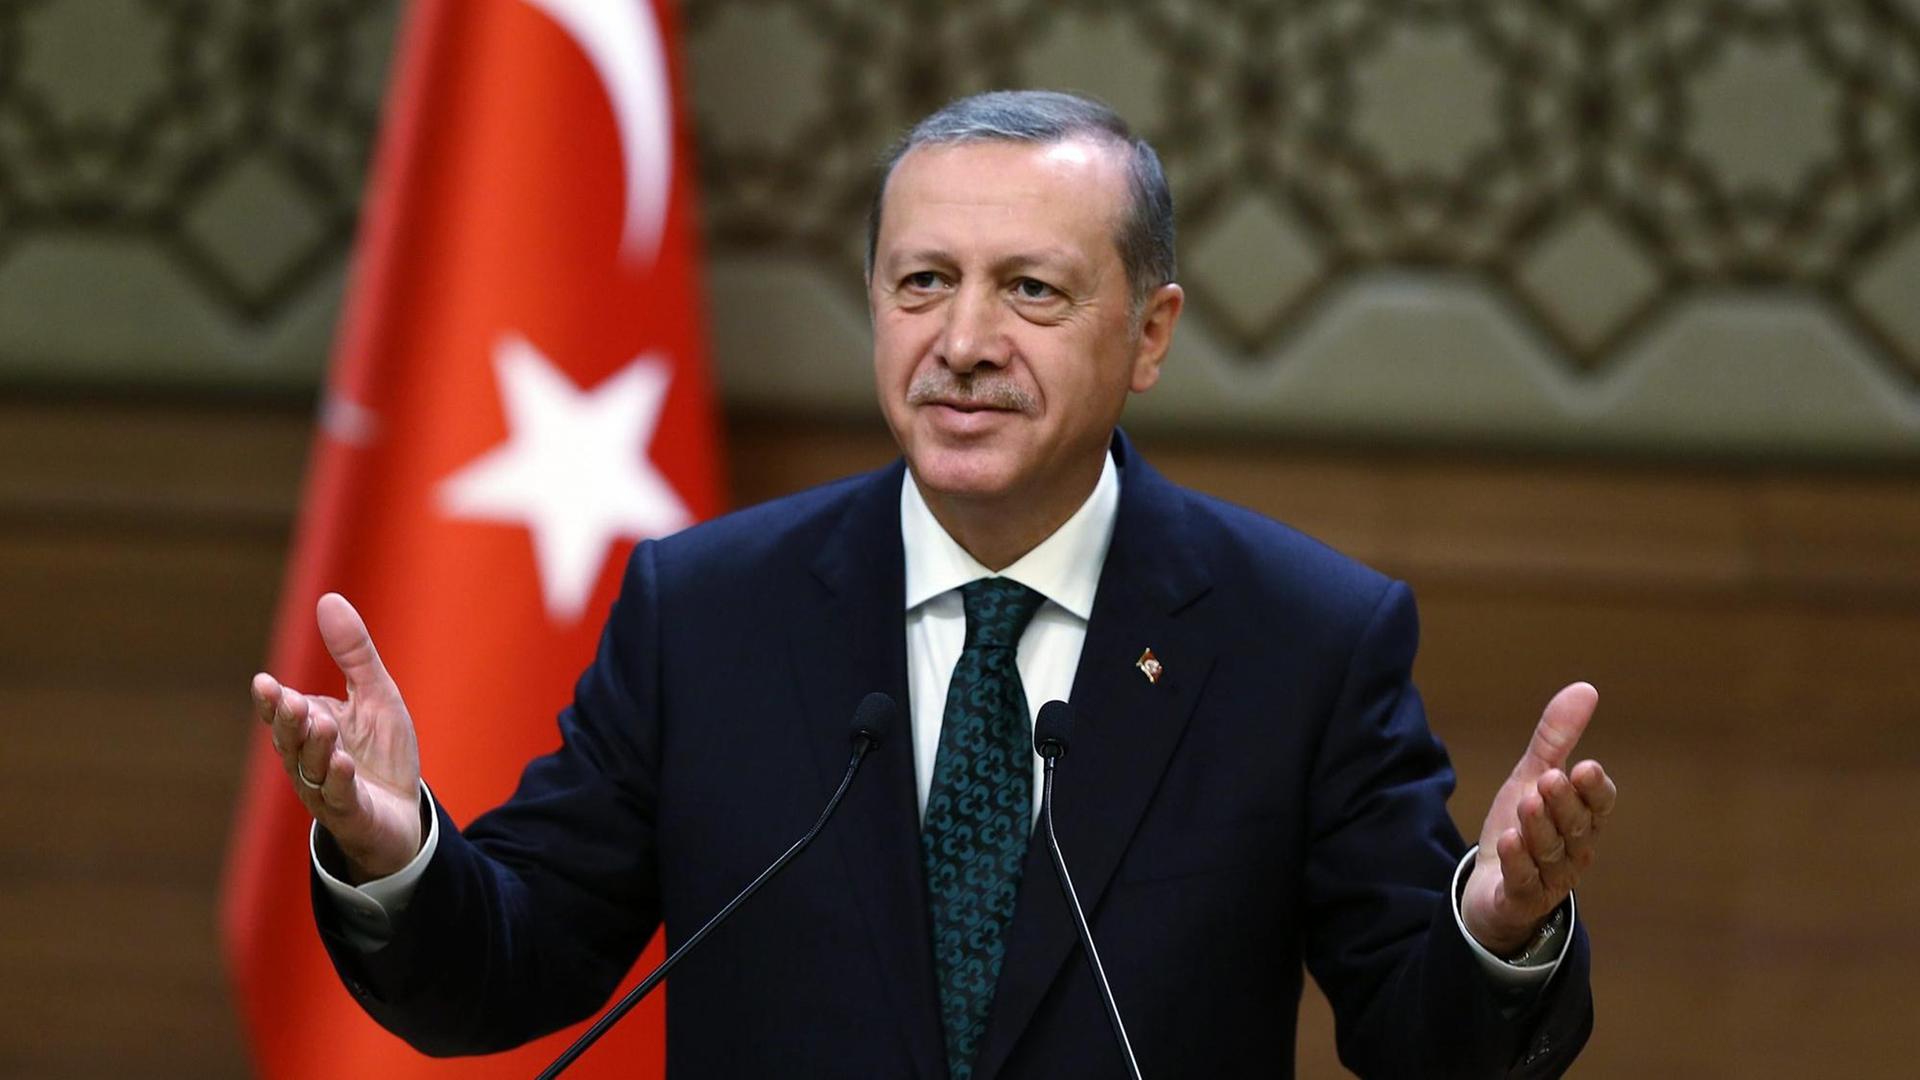 Der türkische Präsident Recep Tayyip Erdogan spricht hält eine Rede in Ankara, im Hintergrund die türkische Flagge.